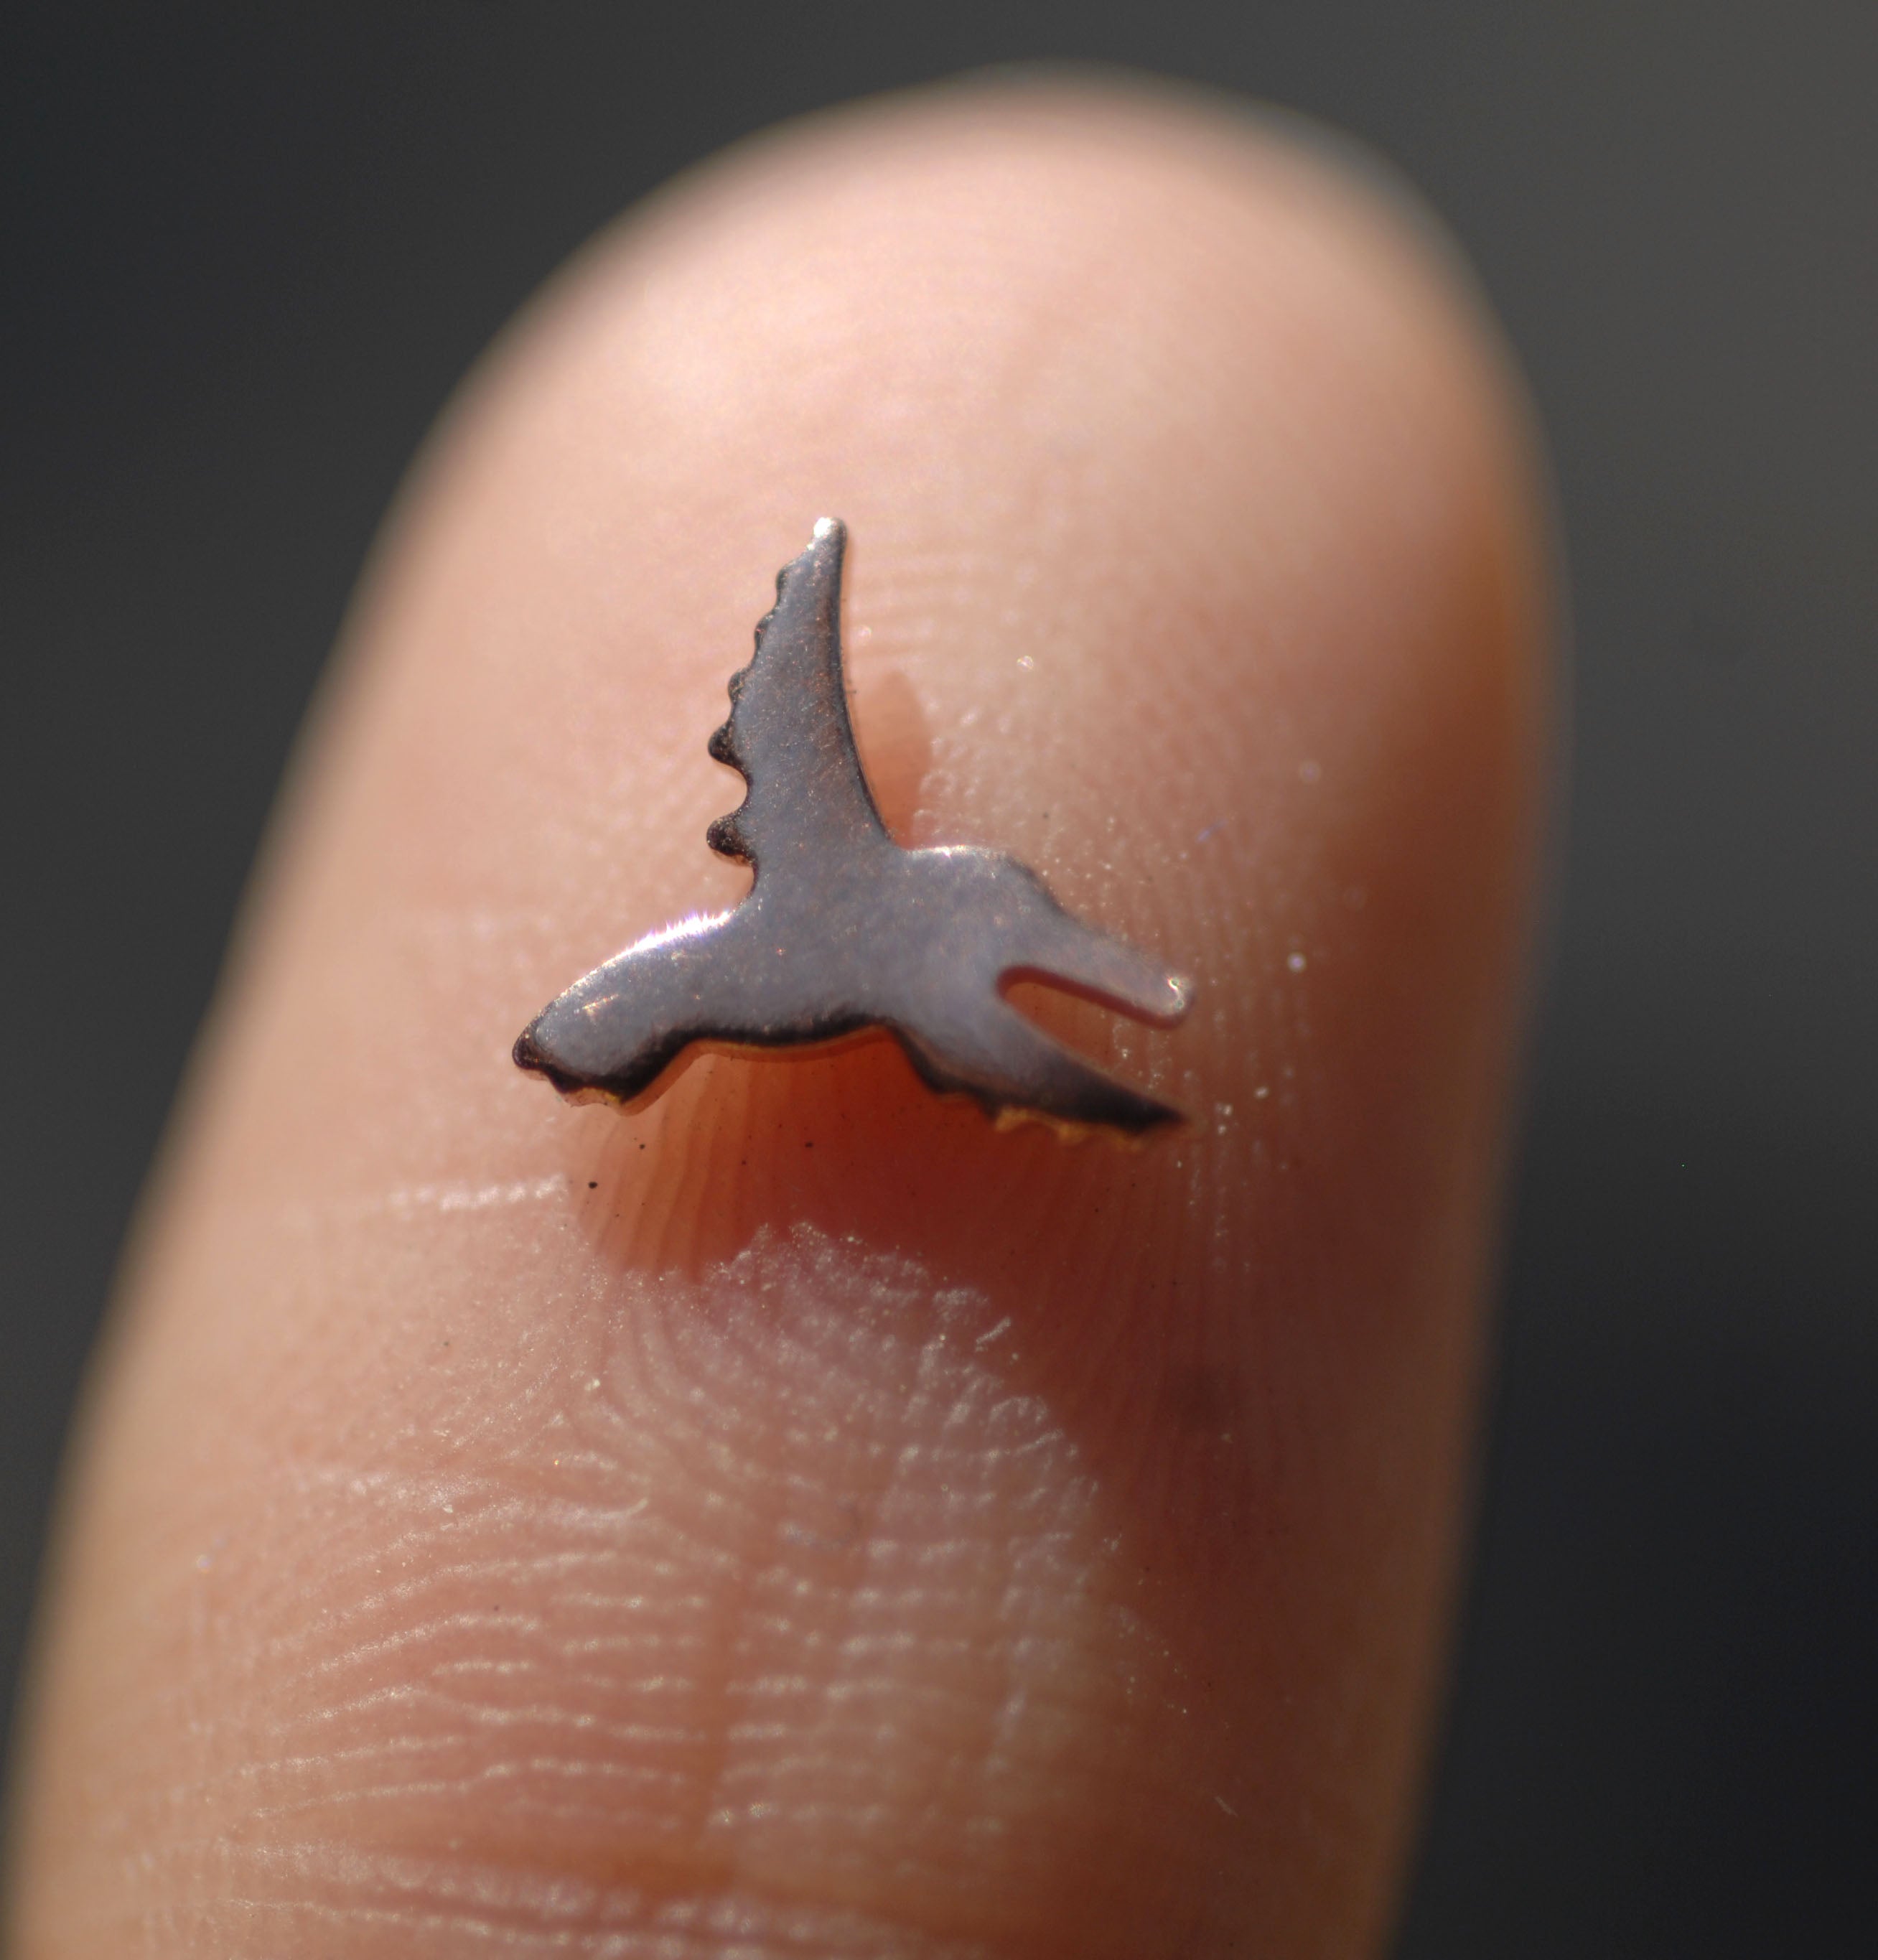 Most Tiny Metal Hummingbird Mini Blanks